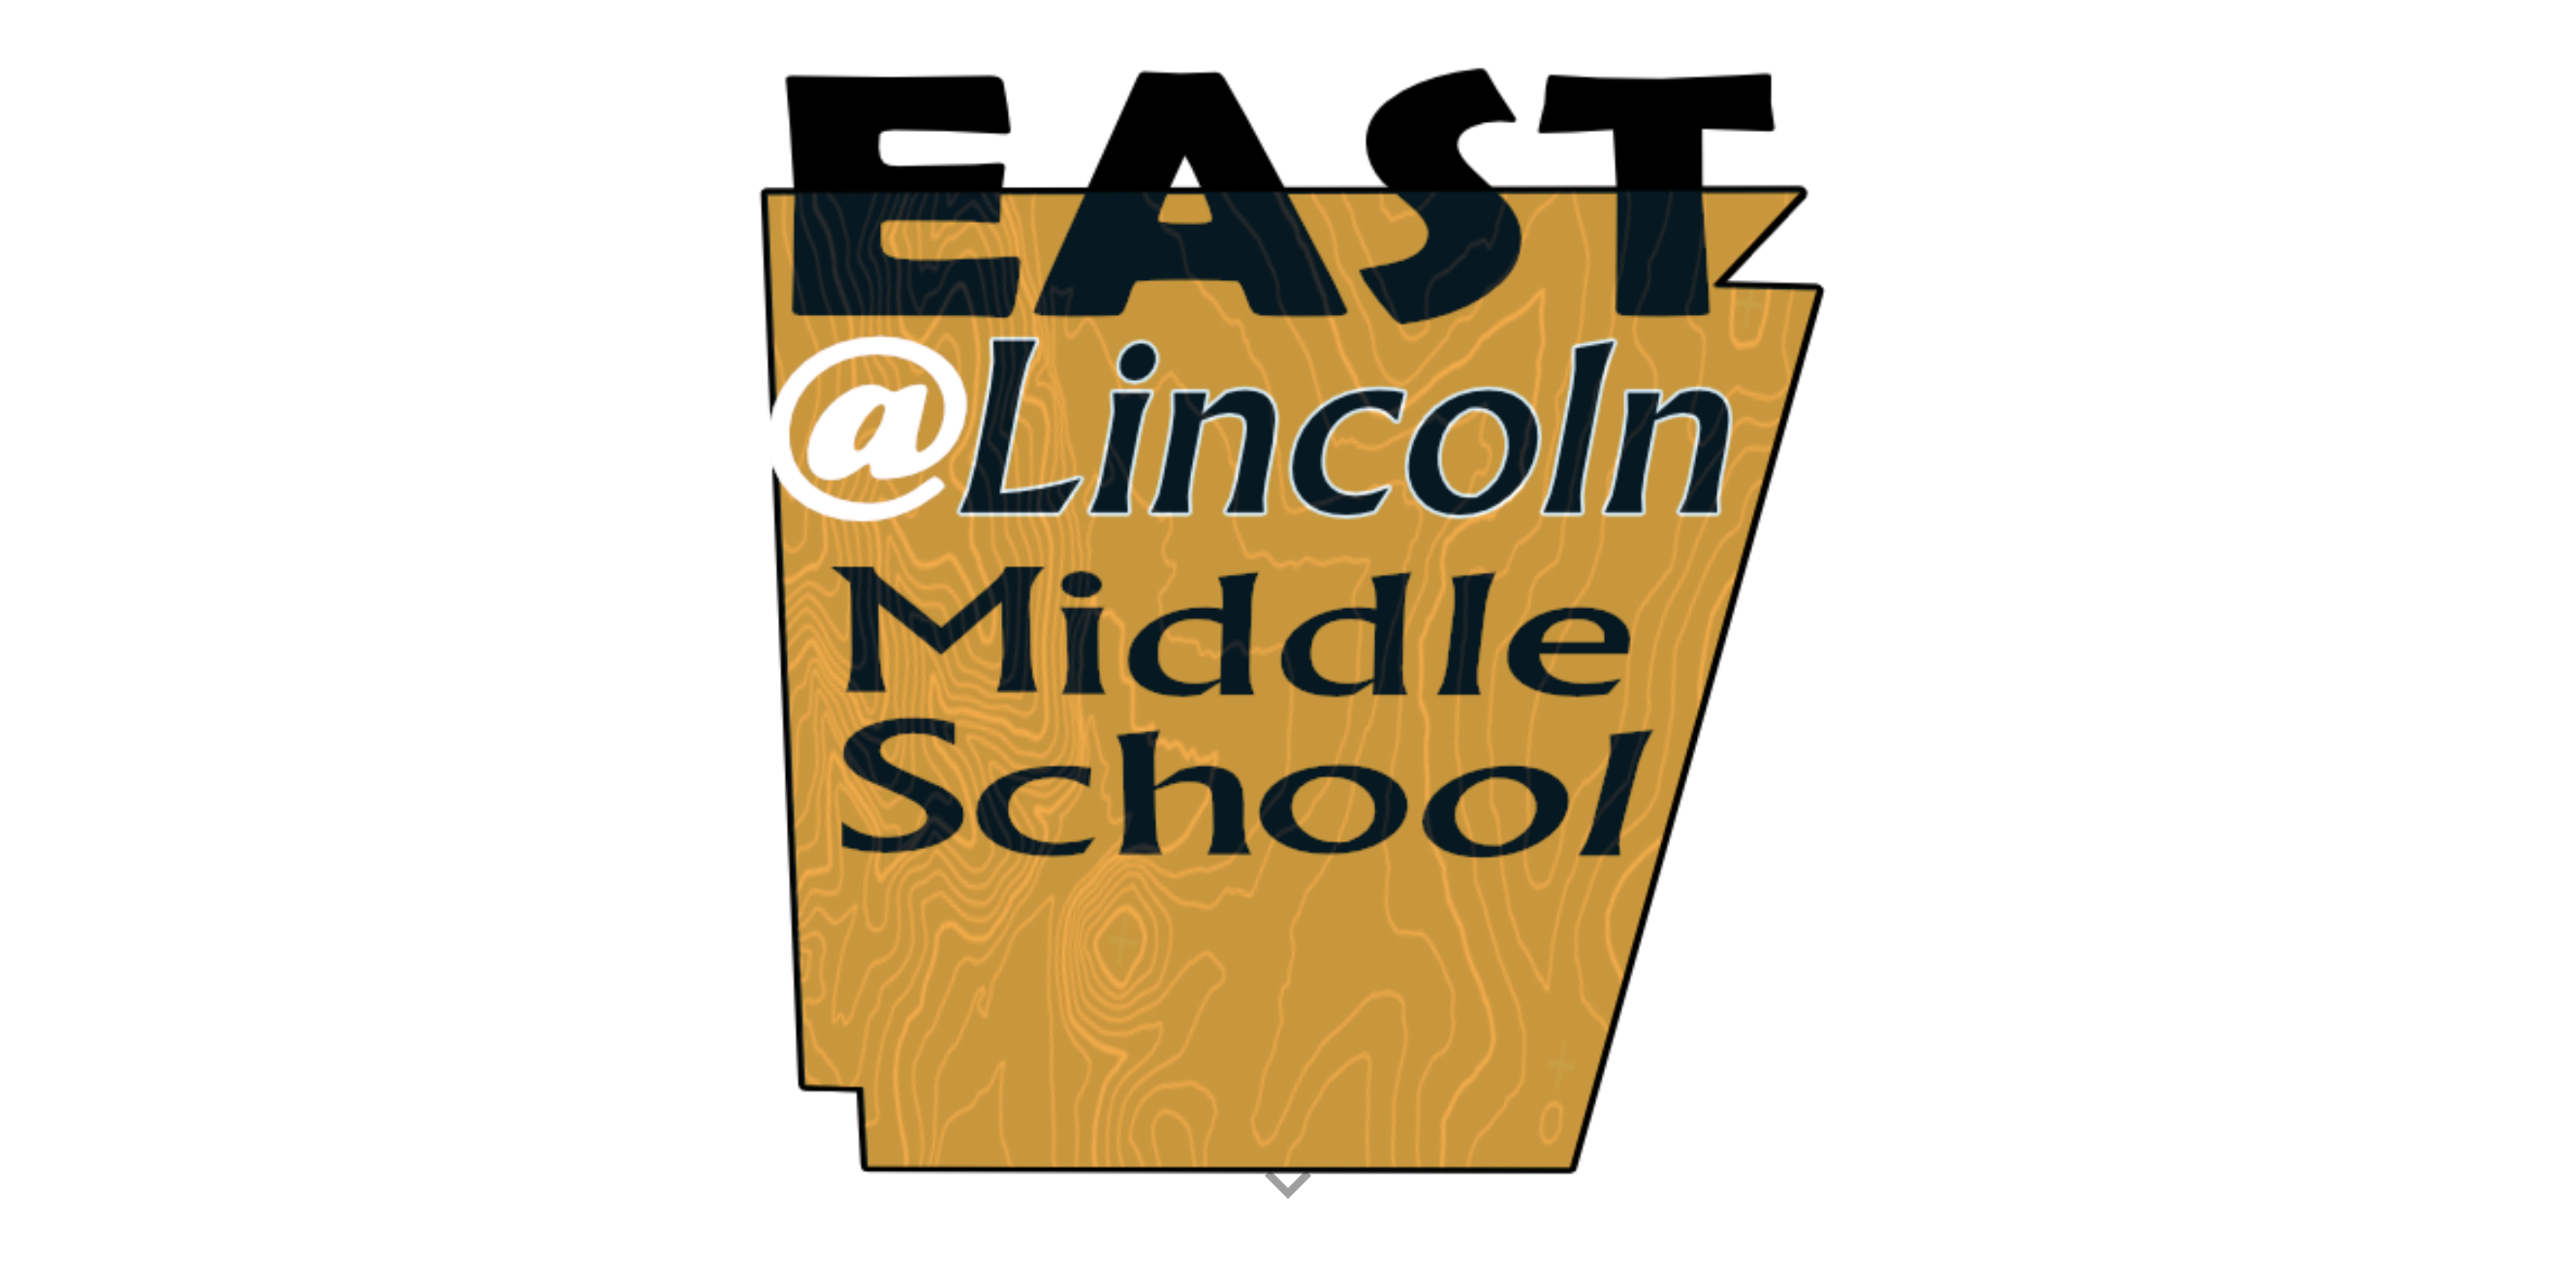 EAST program logo